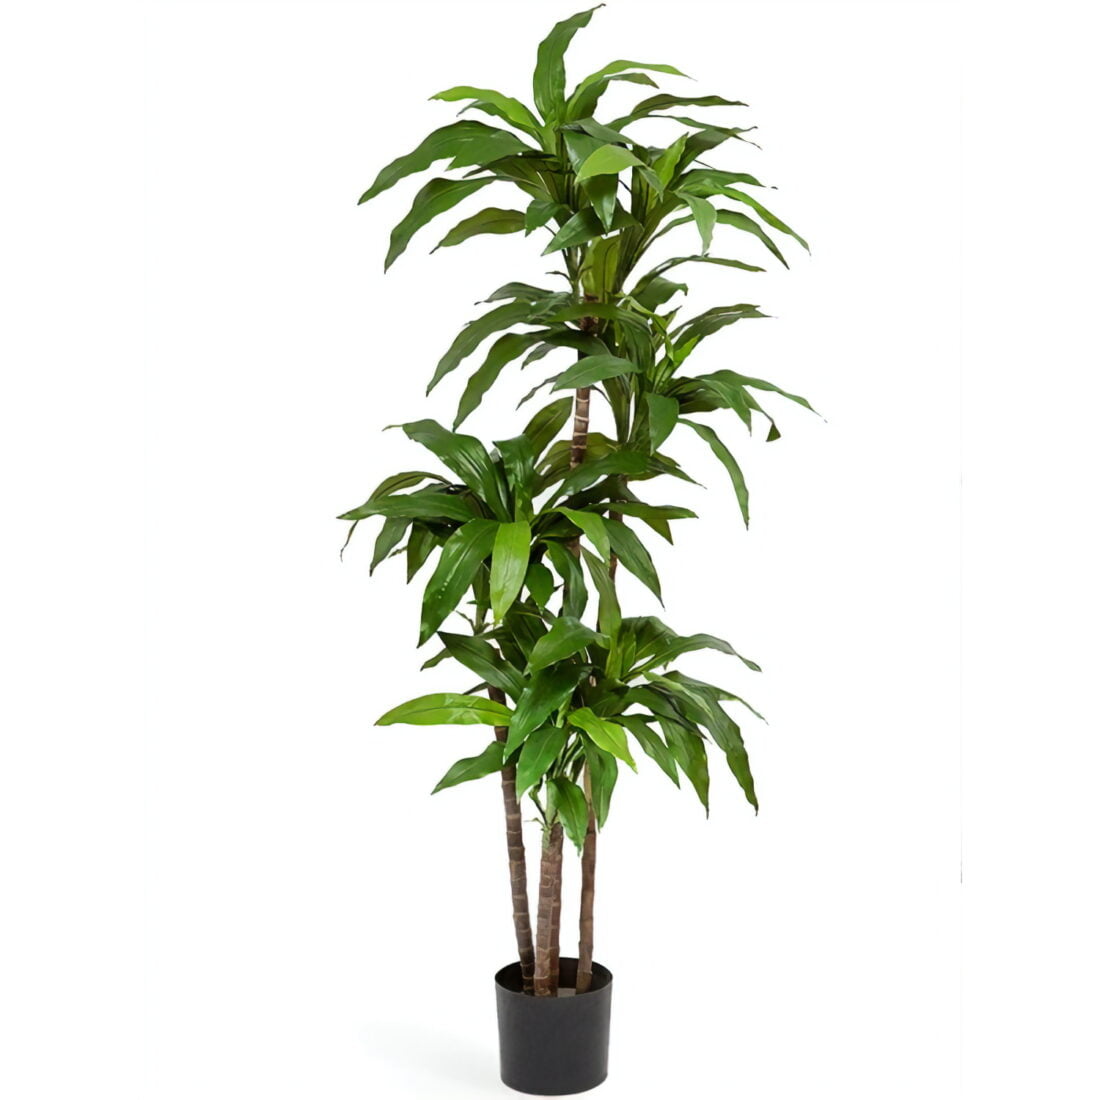 Искусственное растение Драцена Джанет Крейг зеленая, высота 150 см, для напольного кашпо